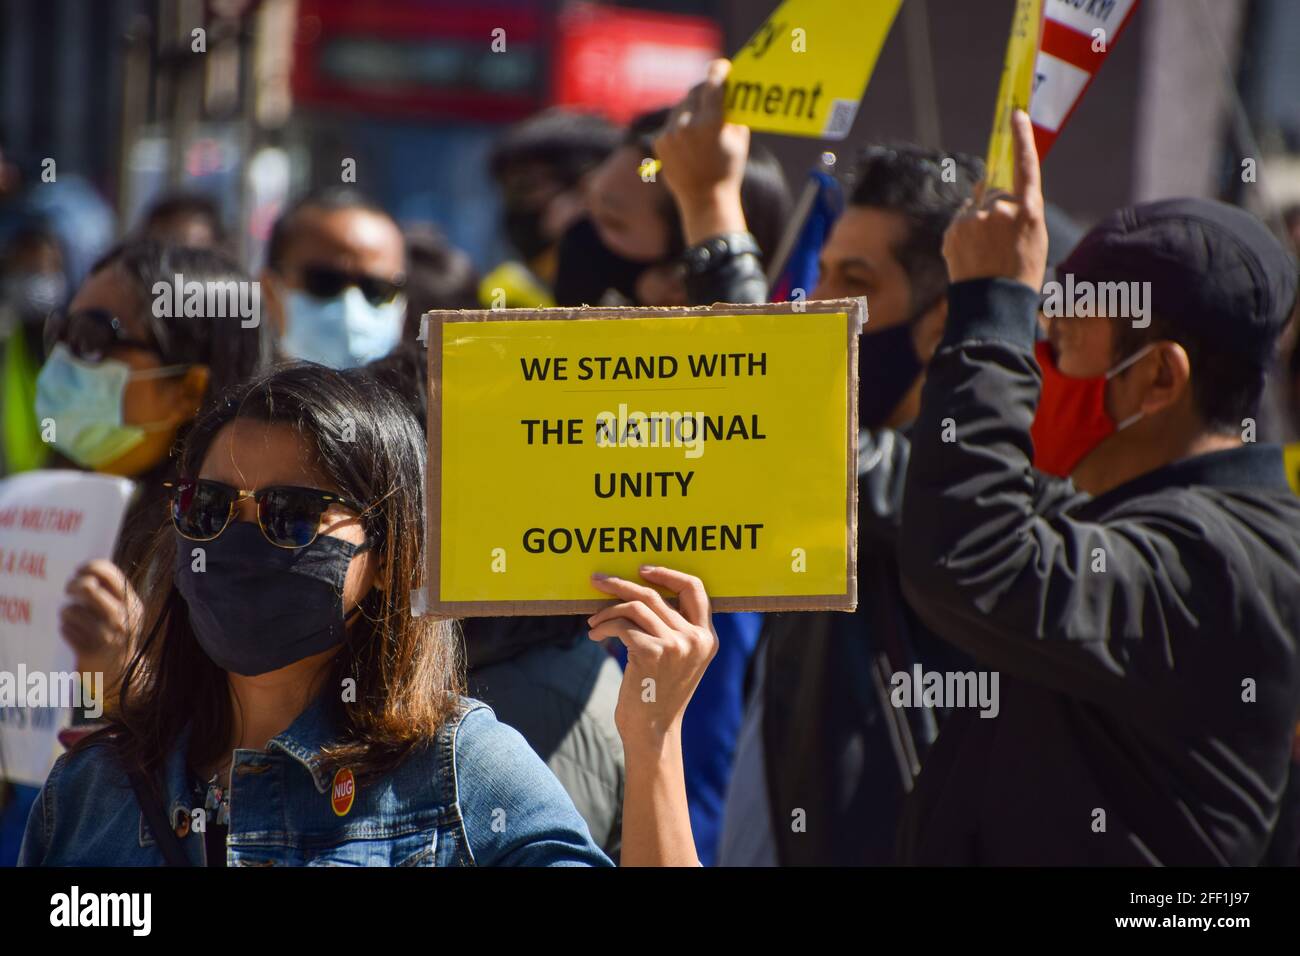 Londra, Regno Unito. 24 aprile 2021. I manifestanti si sono riuniti in Piazza del Parlamento per protestare contro il colpo di Stato militare in Myanmar e per chiedere al governo britannico di riconoscere il governo di unità nazionale del Myanmar. Foto Stock